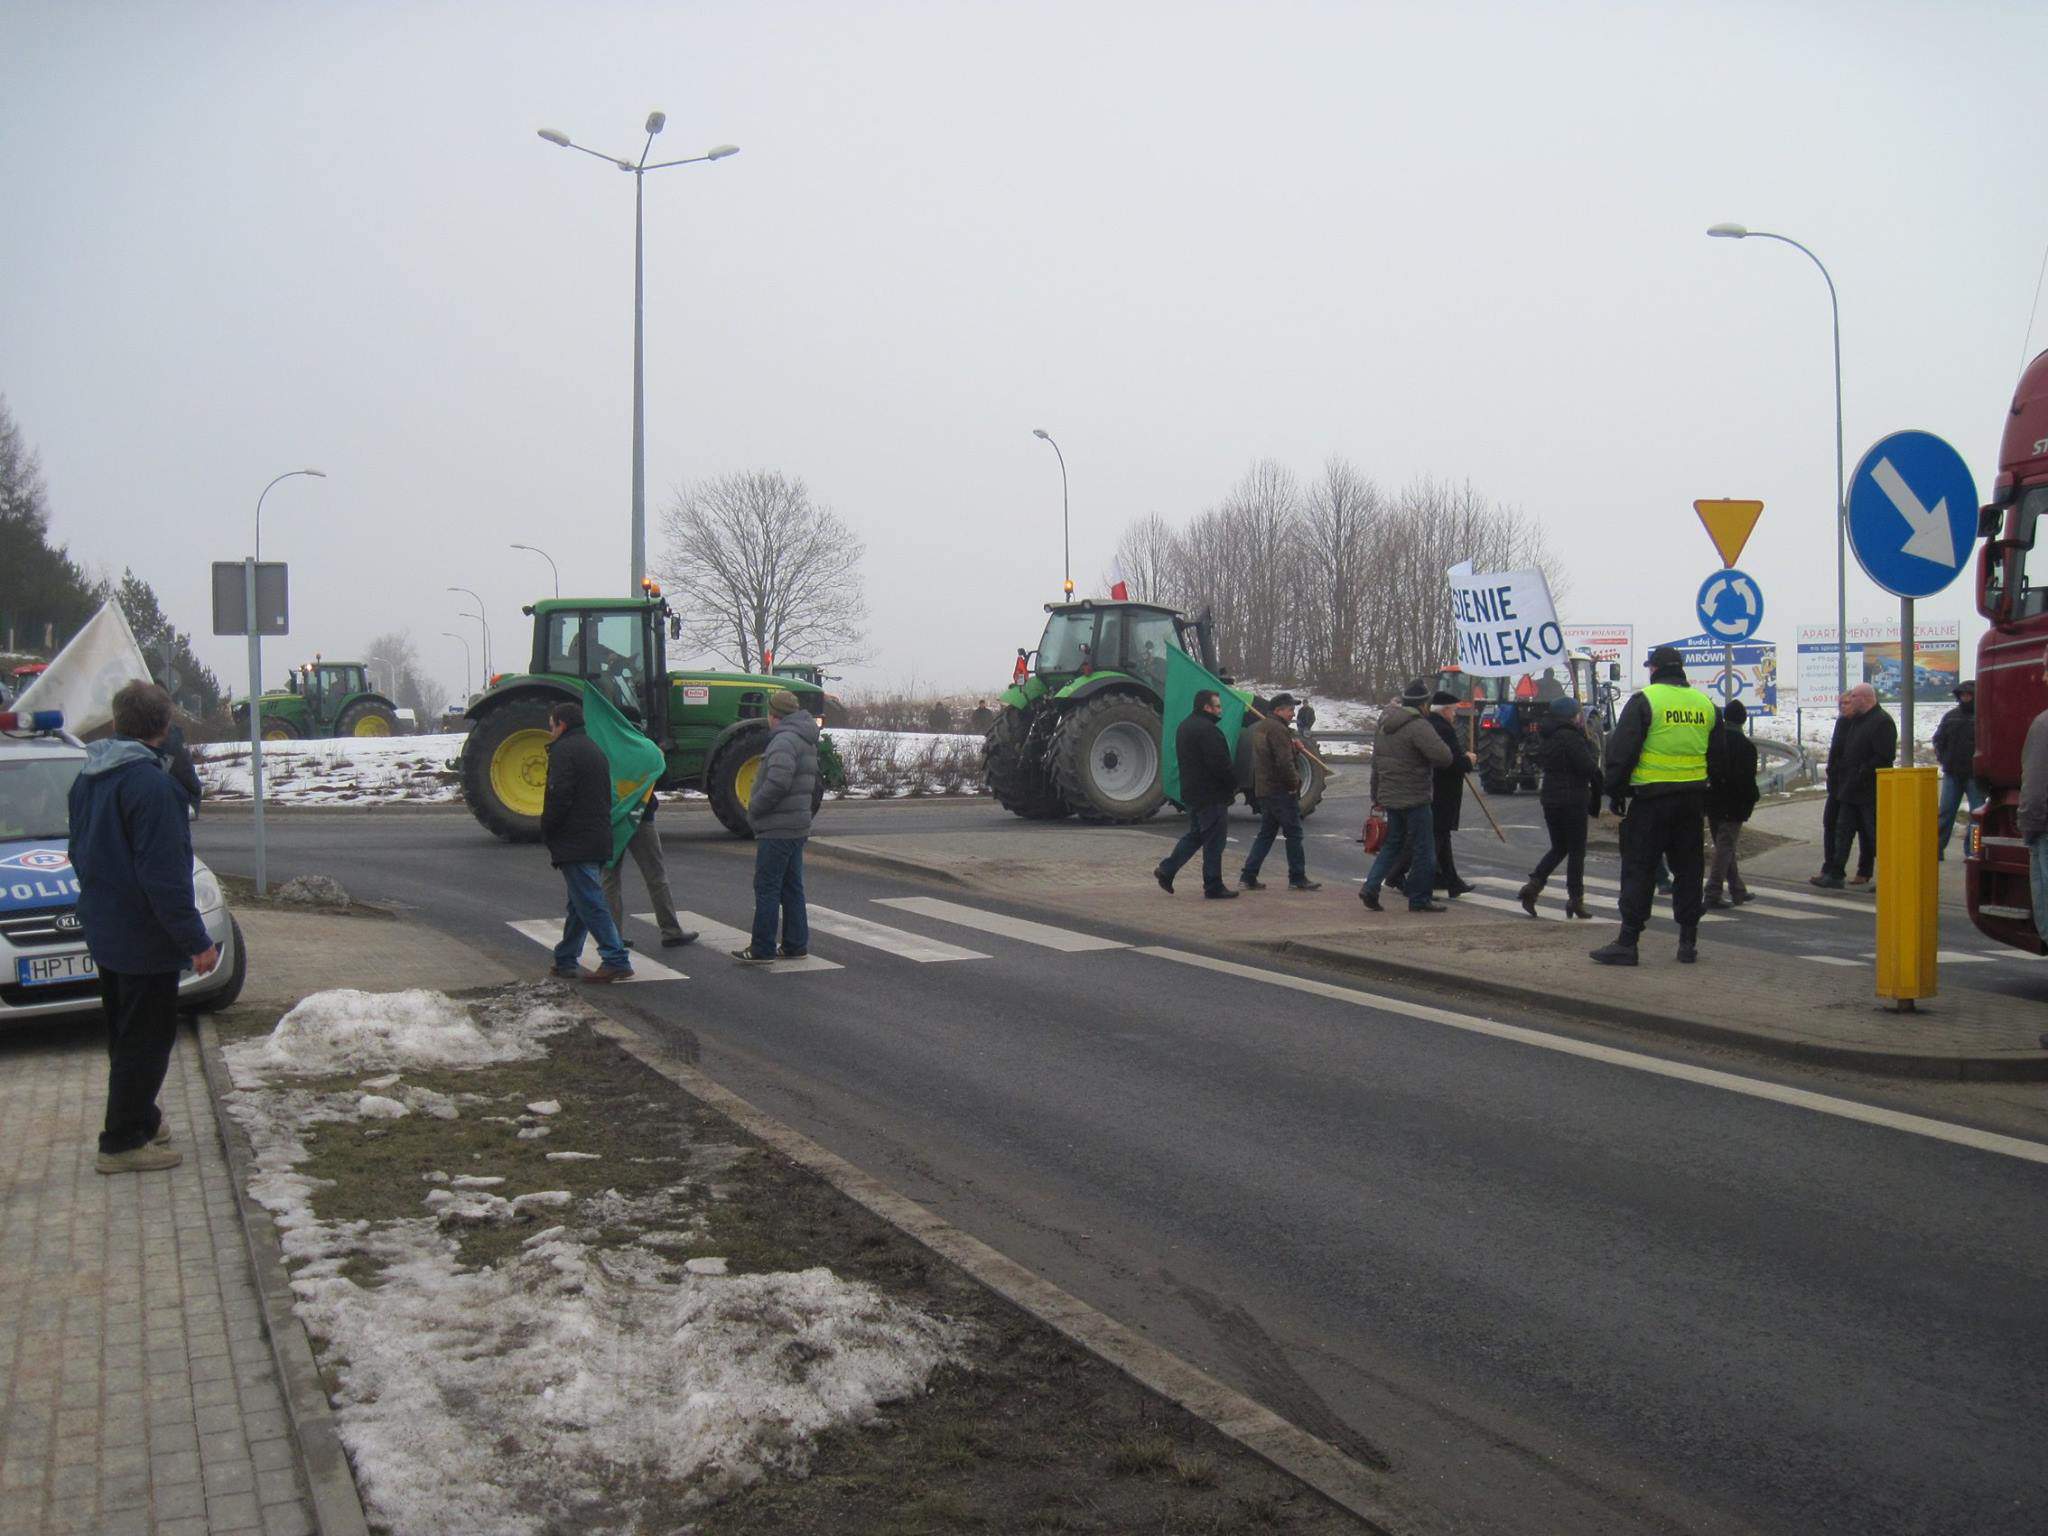 Rolnicy zablokują drogi krajowej nr 12 w Błaszkach, Warcie i Wróblewie w środę, 7 marca. Zdjęcie poglądowe. Fot. Facebook